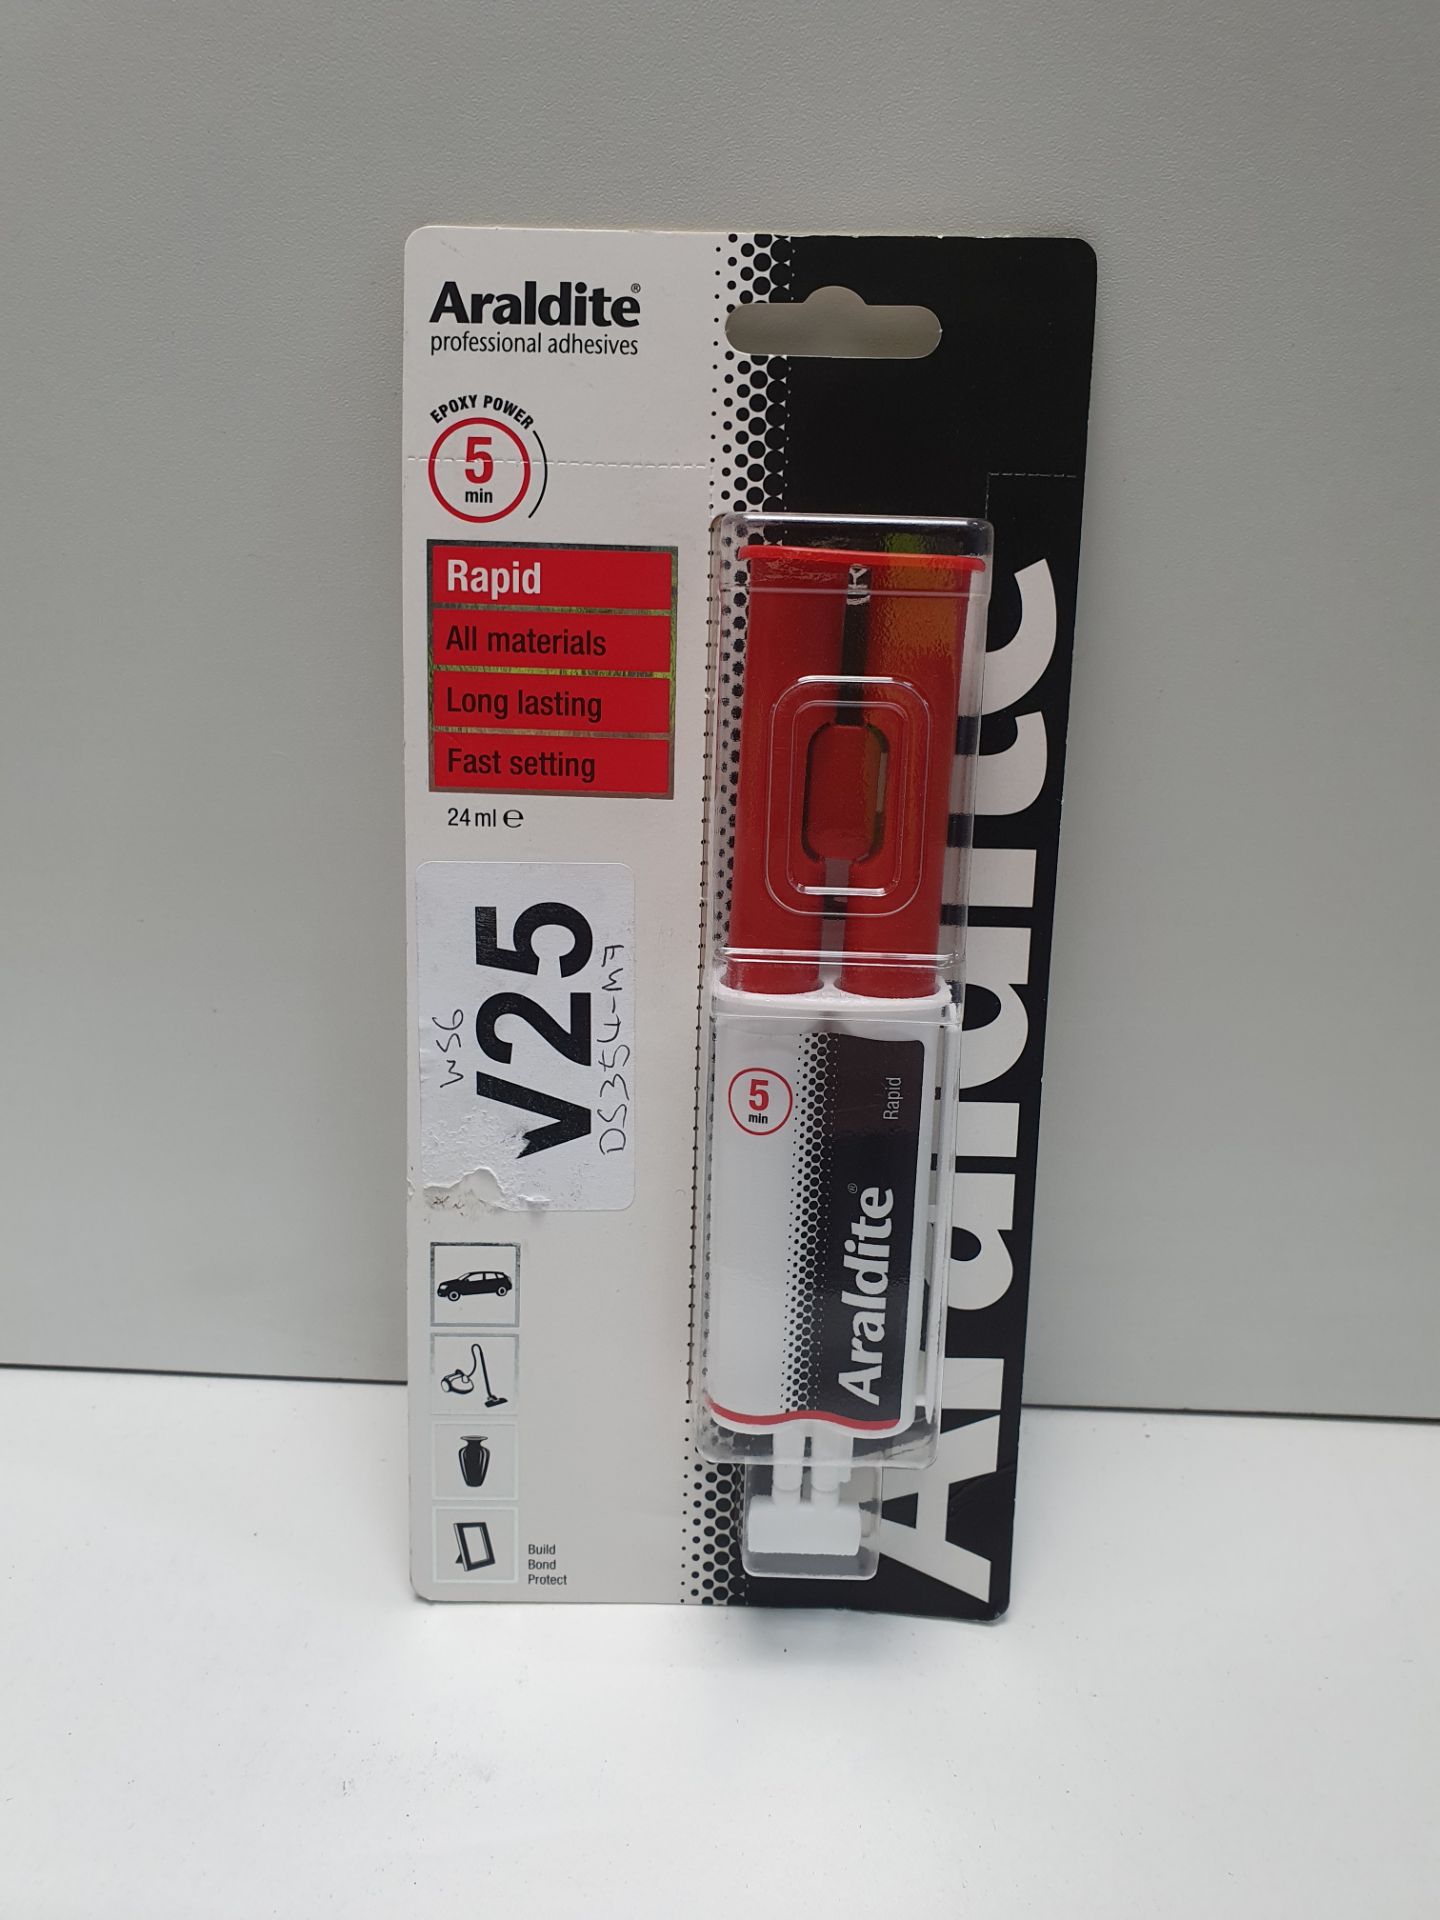 Araldite Raipd, 24ml Syringe Epoxy Adhesive - Image 2 of 2